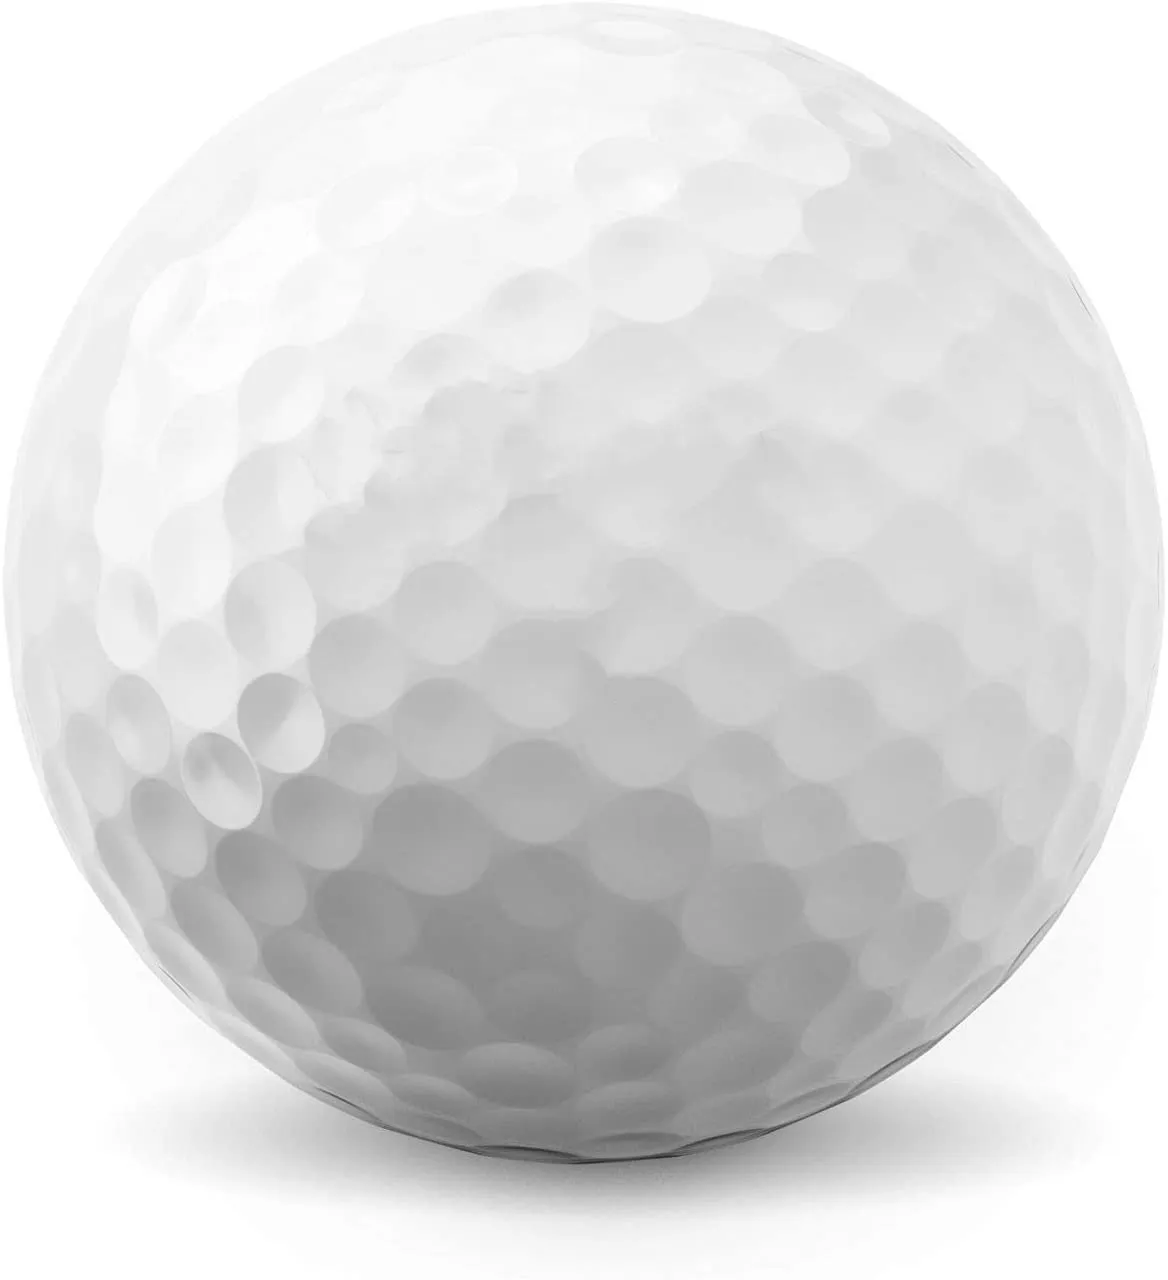 2021 nuevo diseño de alta calidad, 2, 3, 4 piezas Usga conforme de accesorios de uretano suave torneo Triple de pelota de Golf